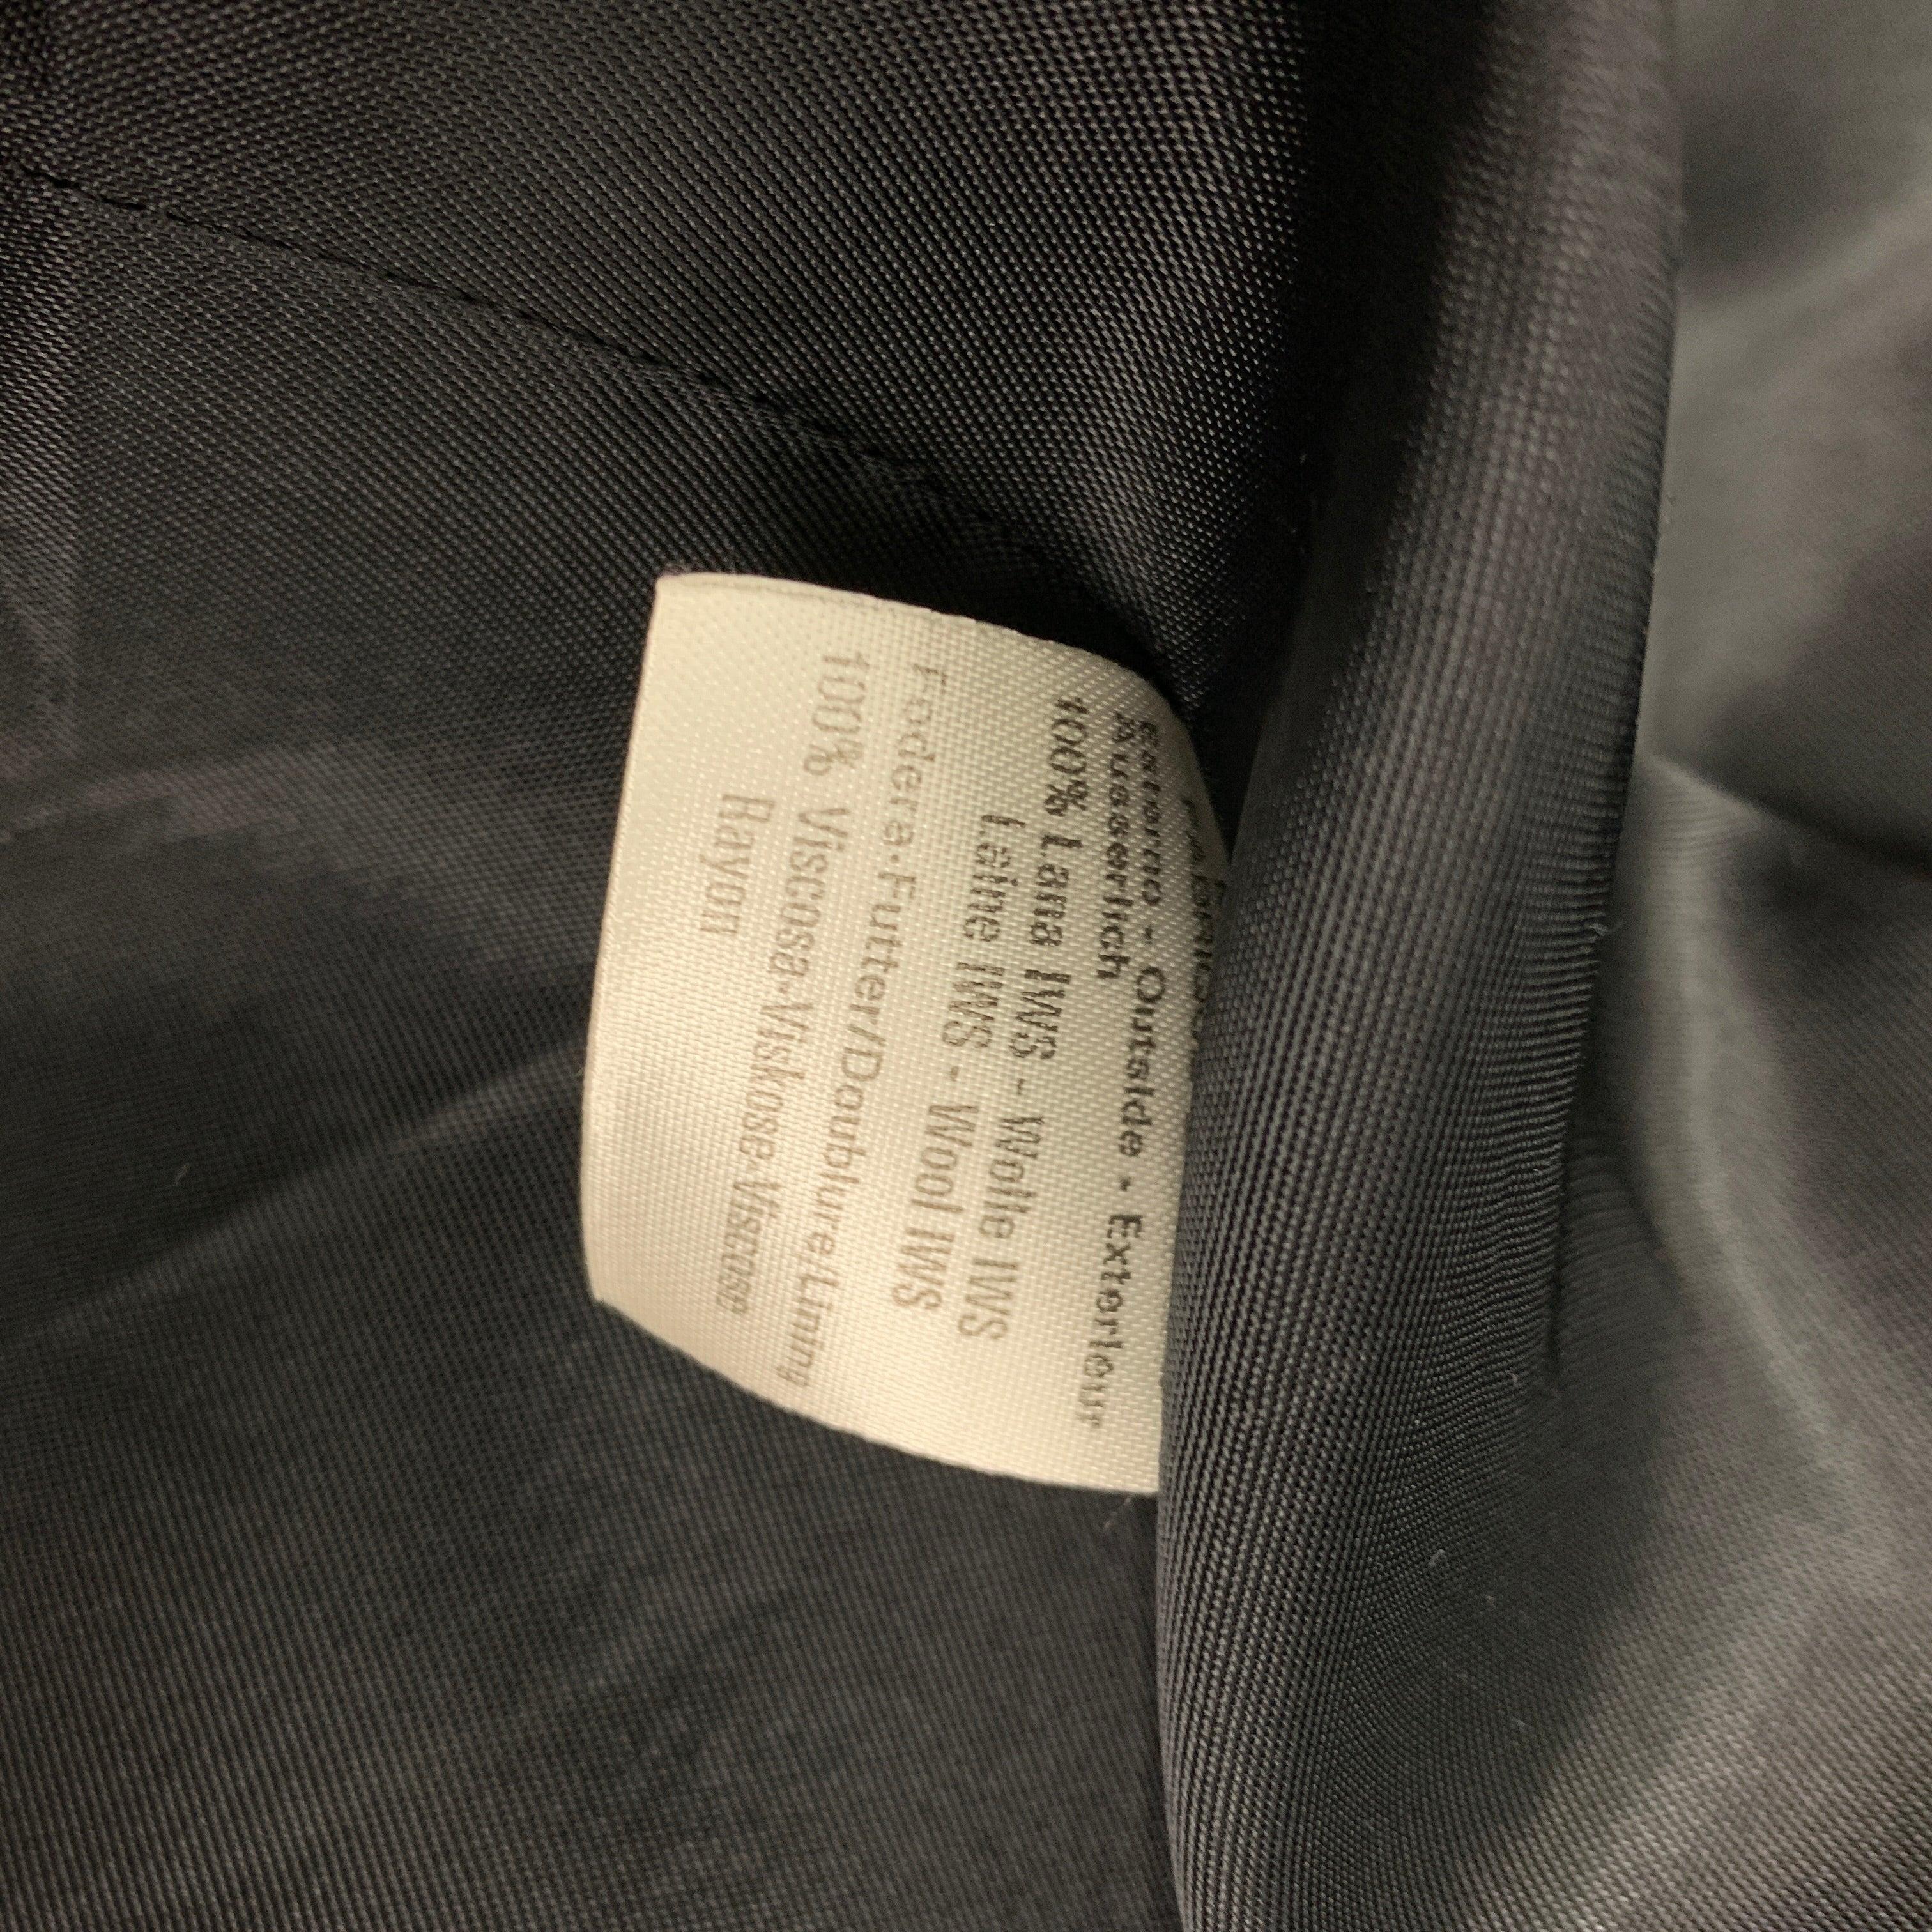 BYBLOS Size 16 Black White Houndstooth Jacket Blazer For Sale 2